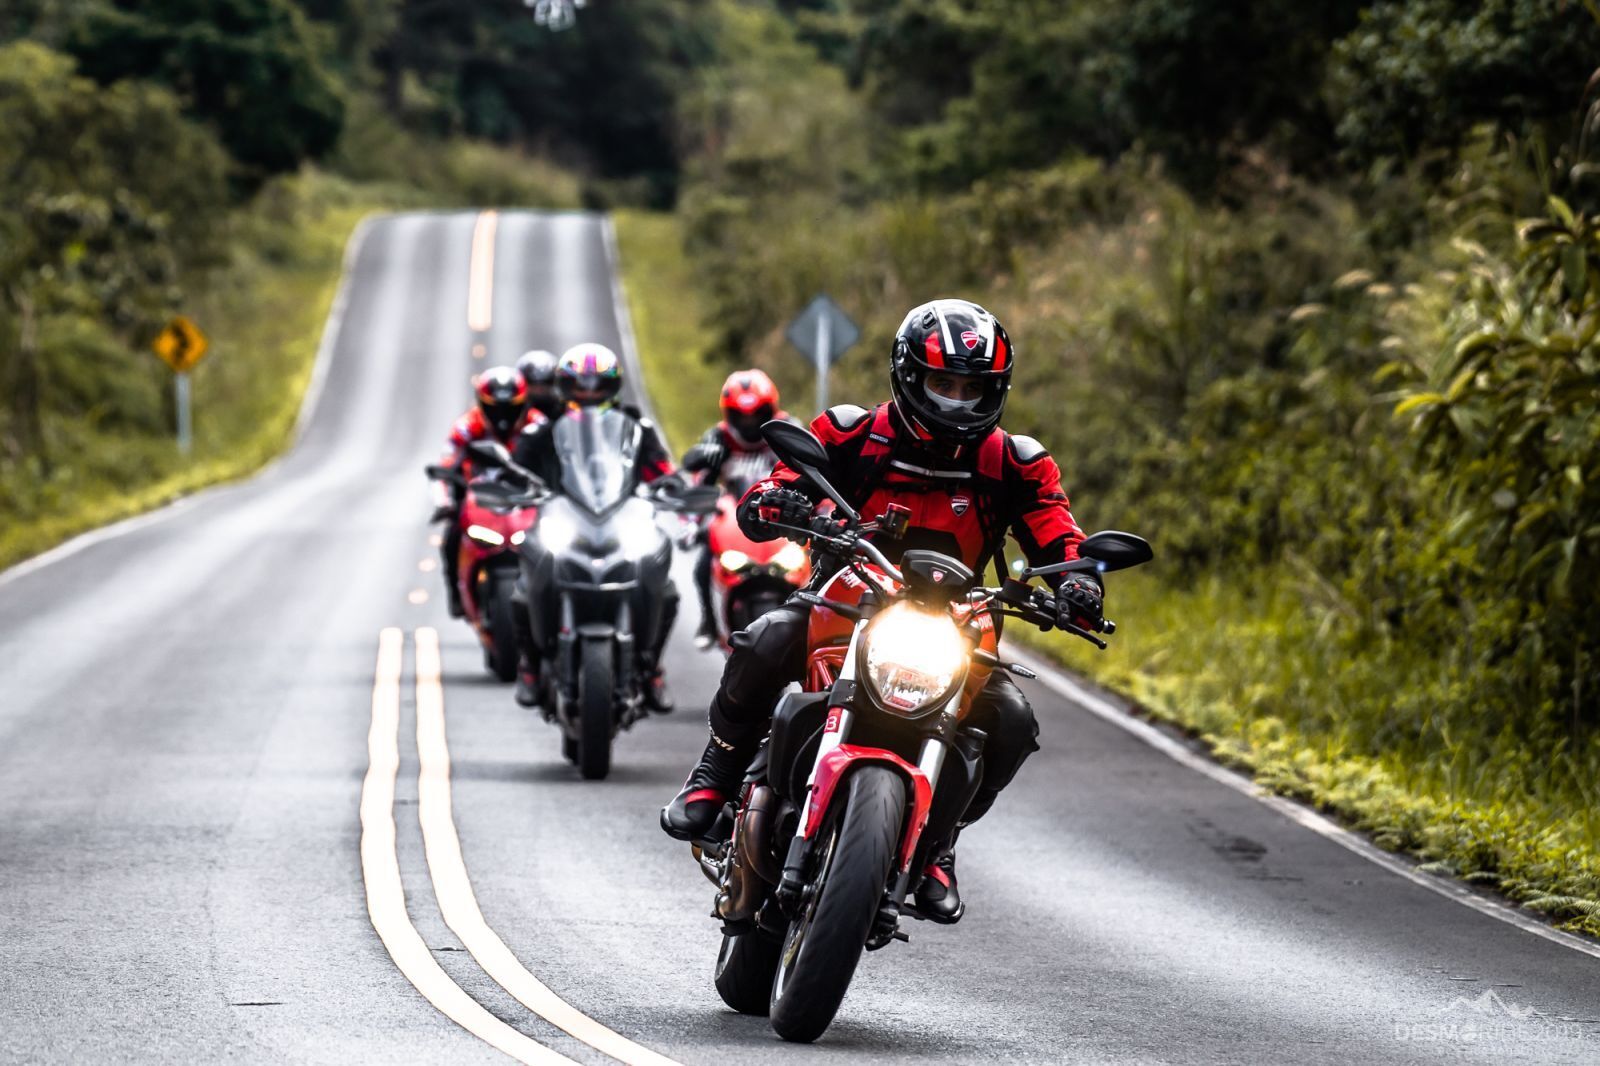 Ducati Desmo ride 2019